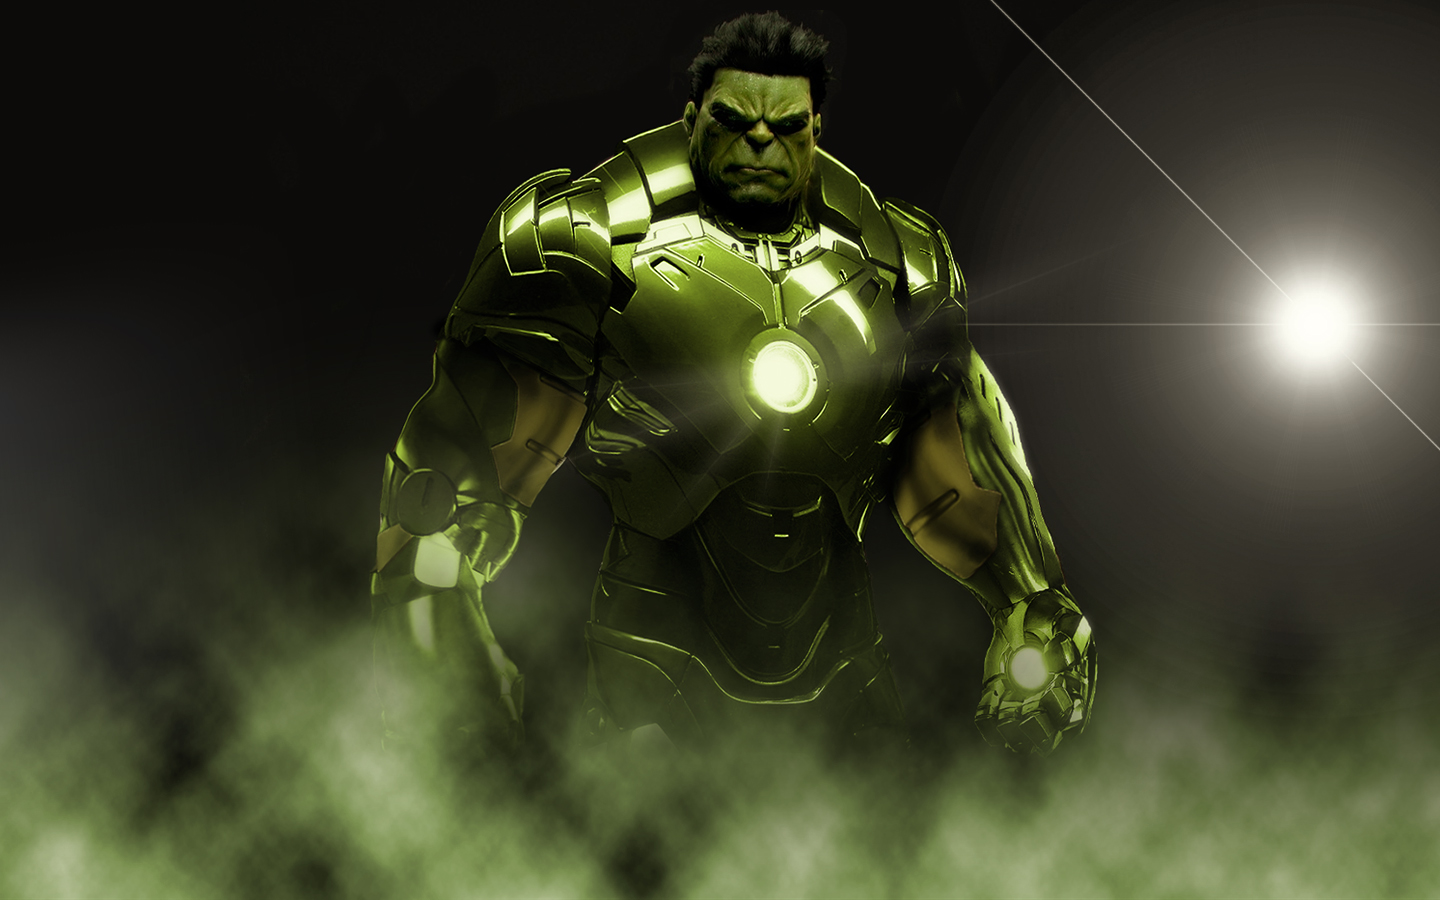 hulk, avengers, the avengers, movie, avengers: age of ultron, armor, black hair